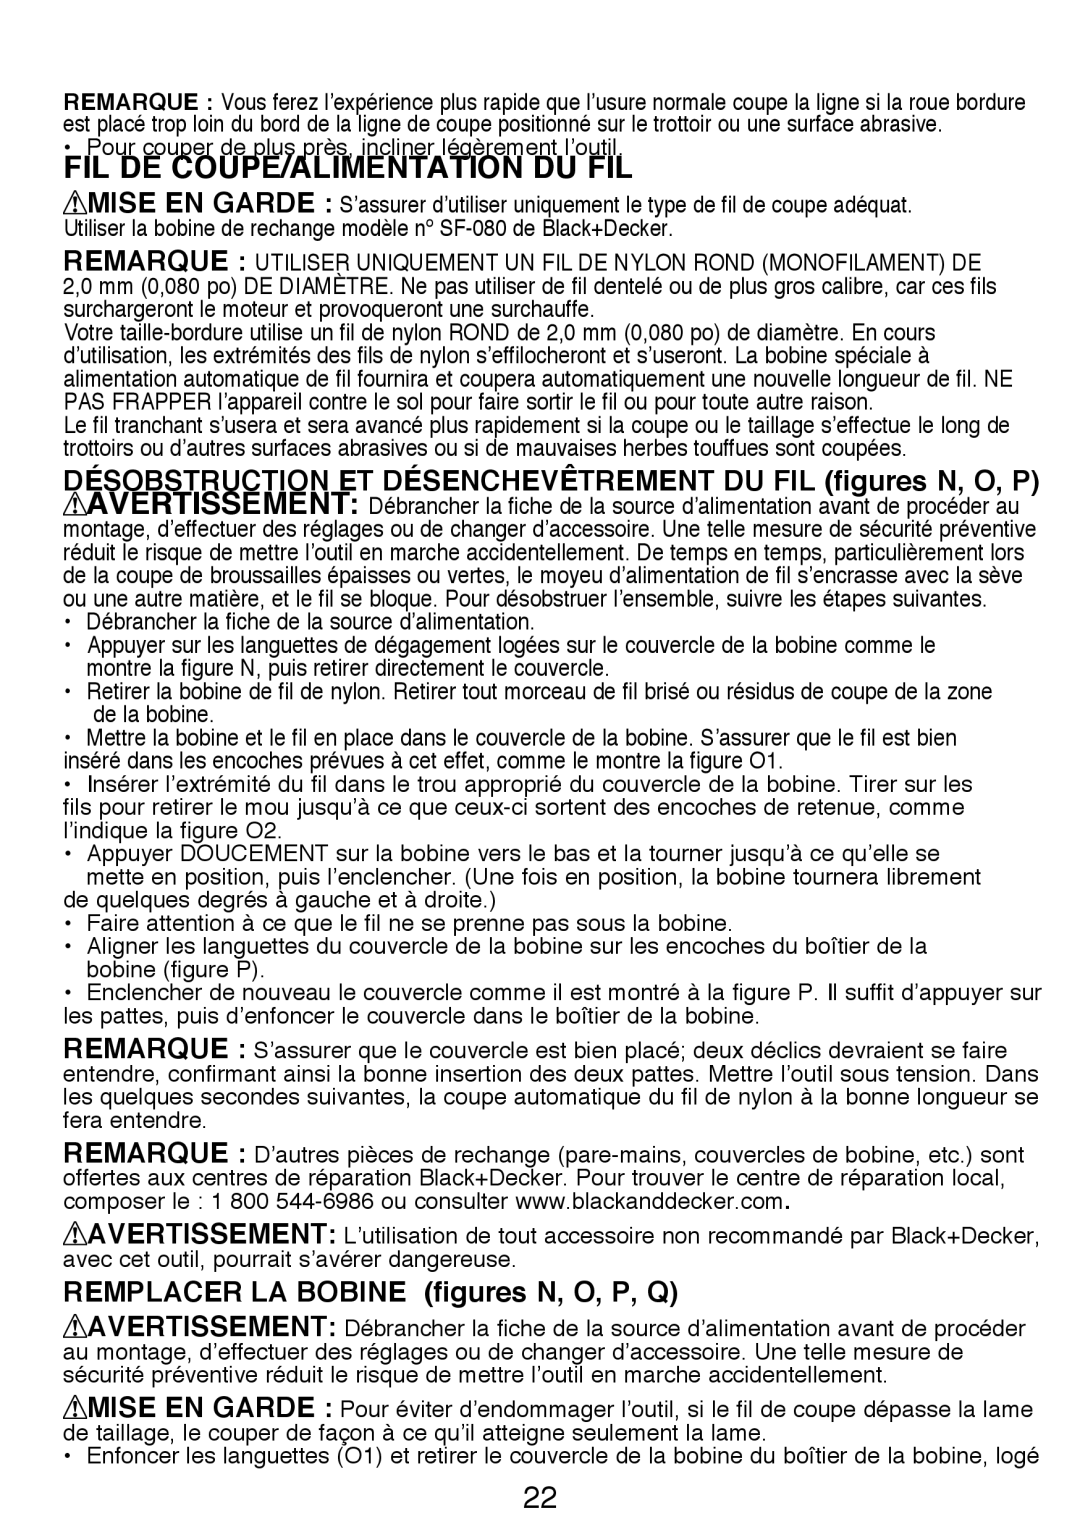 Black & Decker GH3000R instruction manual Fil De Coupe/Alimentation Du Fil, REMPLACER LA BOBINE figures N, O, P, Q 